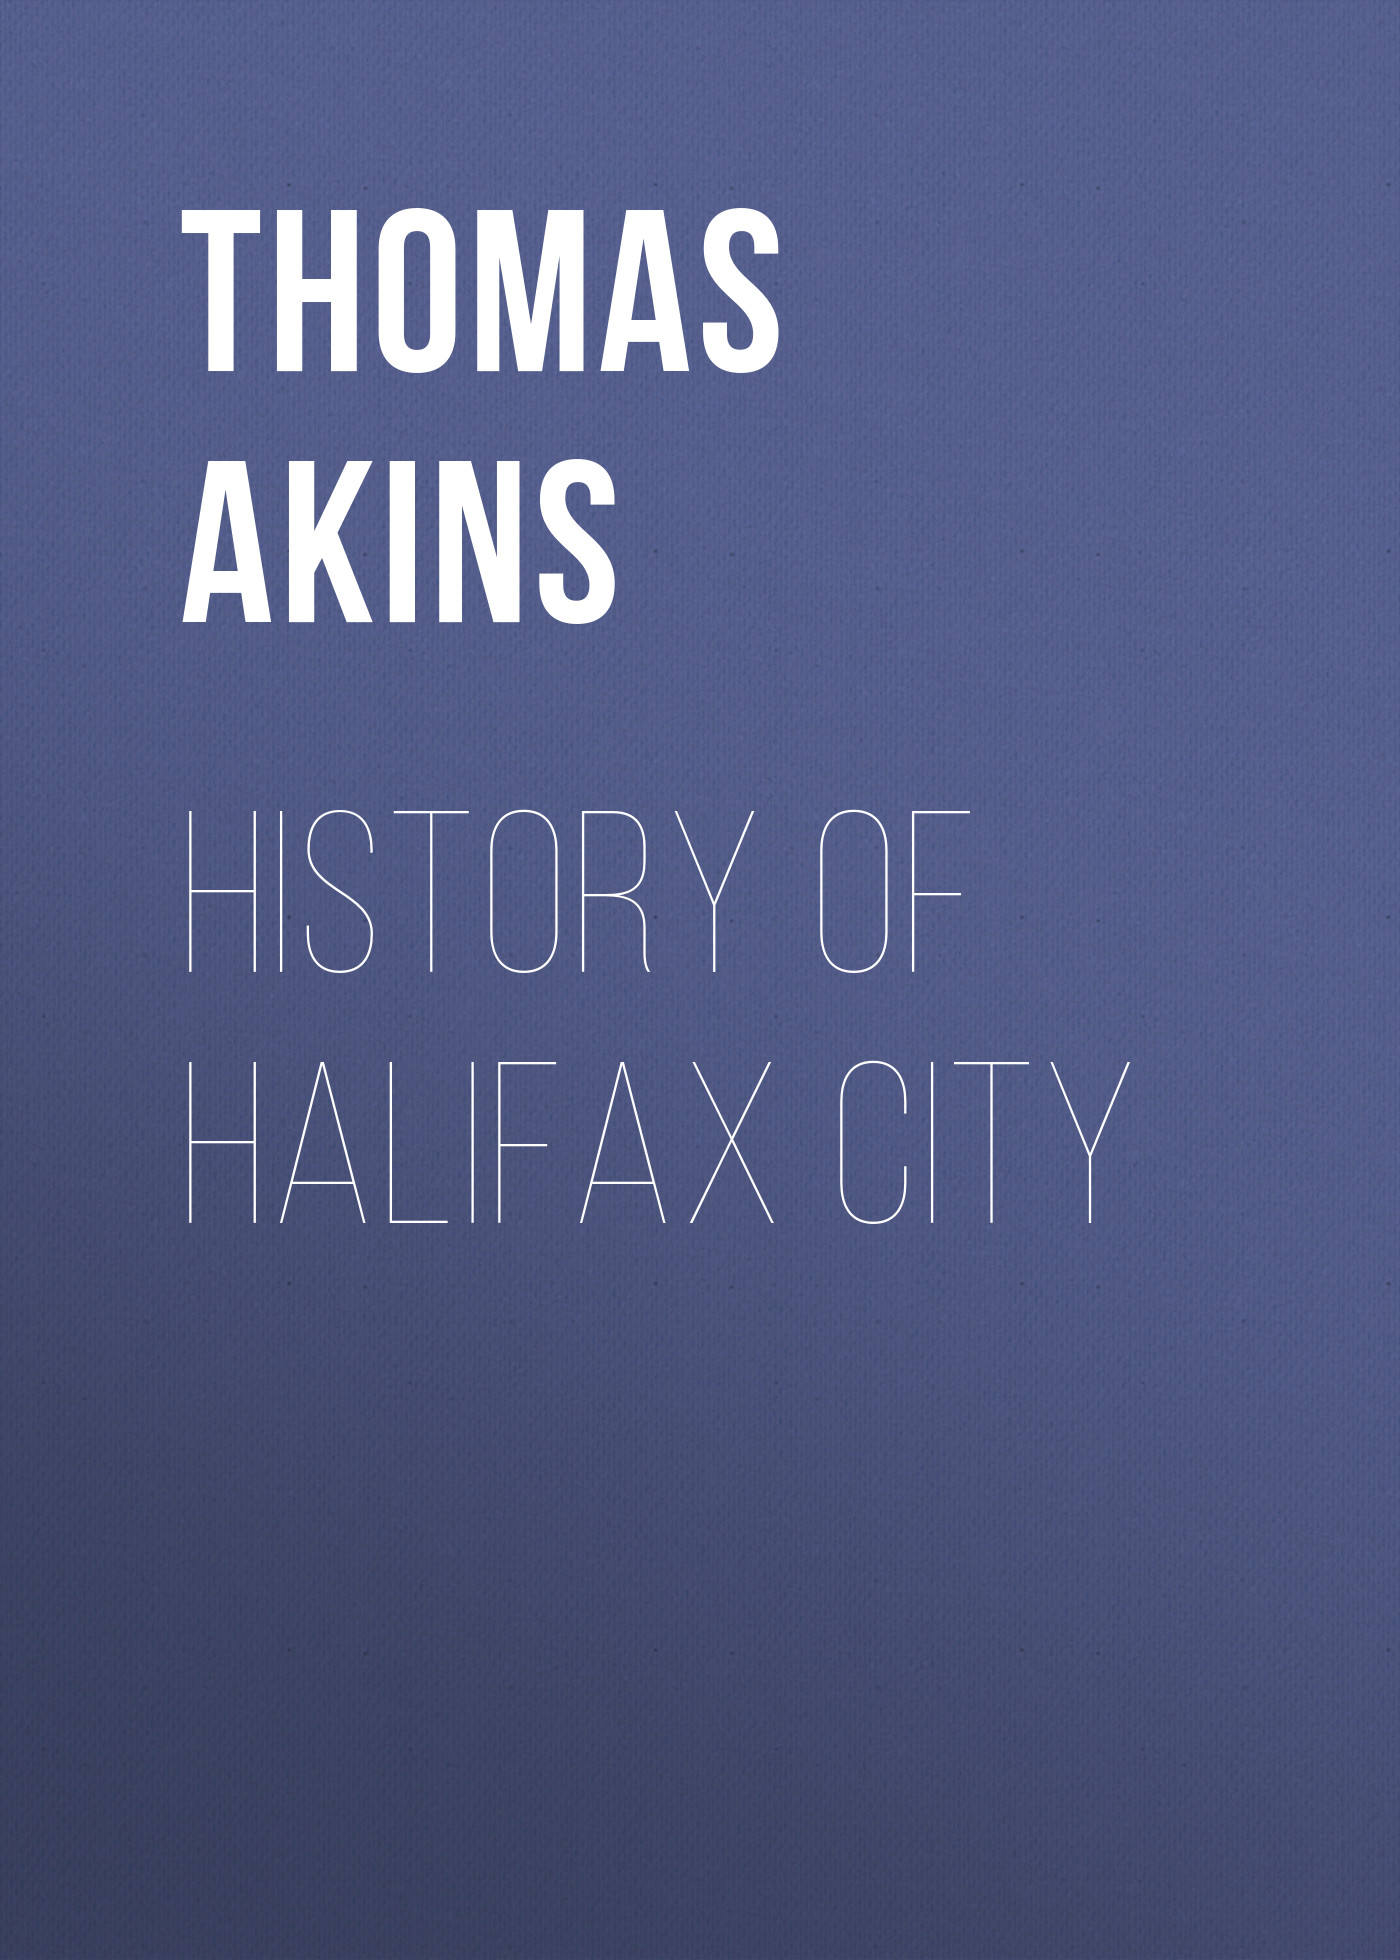 Книга History of Halifax City из серии , созданная Thomas Akins, может относится к жанру Зарубежная старинная литература, Зарубежная классика, Историческая литература. Стоимость электронной книги History of Halifax City с идентификатором 24175340 составляет 5.99 руб.